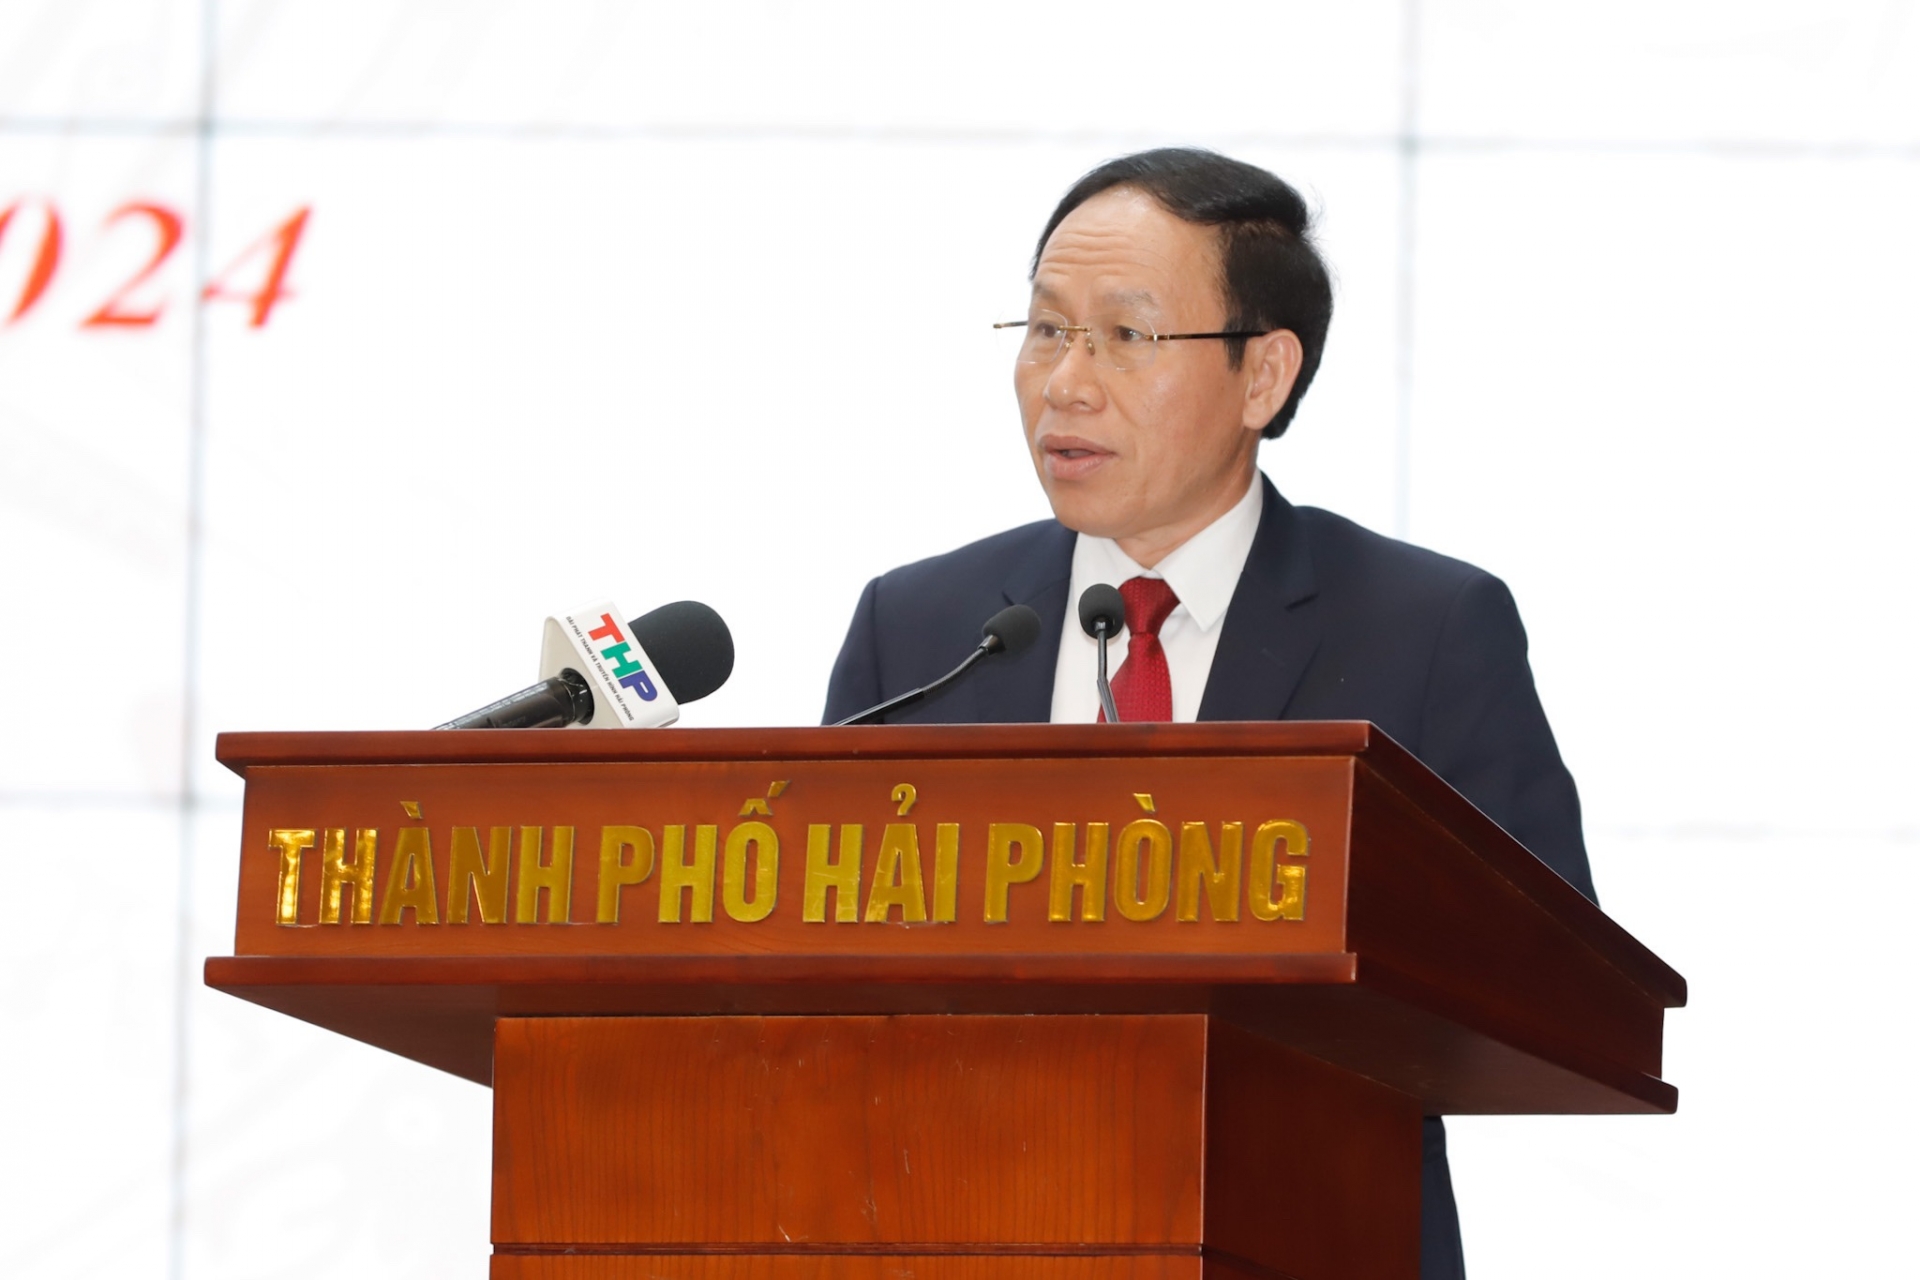 Phó Chủ tịch nước Võ Thị Ánh Xuân trao Cờ Thi đua của Chính phủ tặng thành phố Hải Phòng